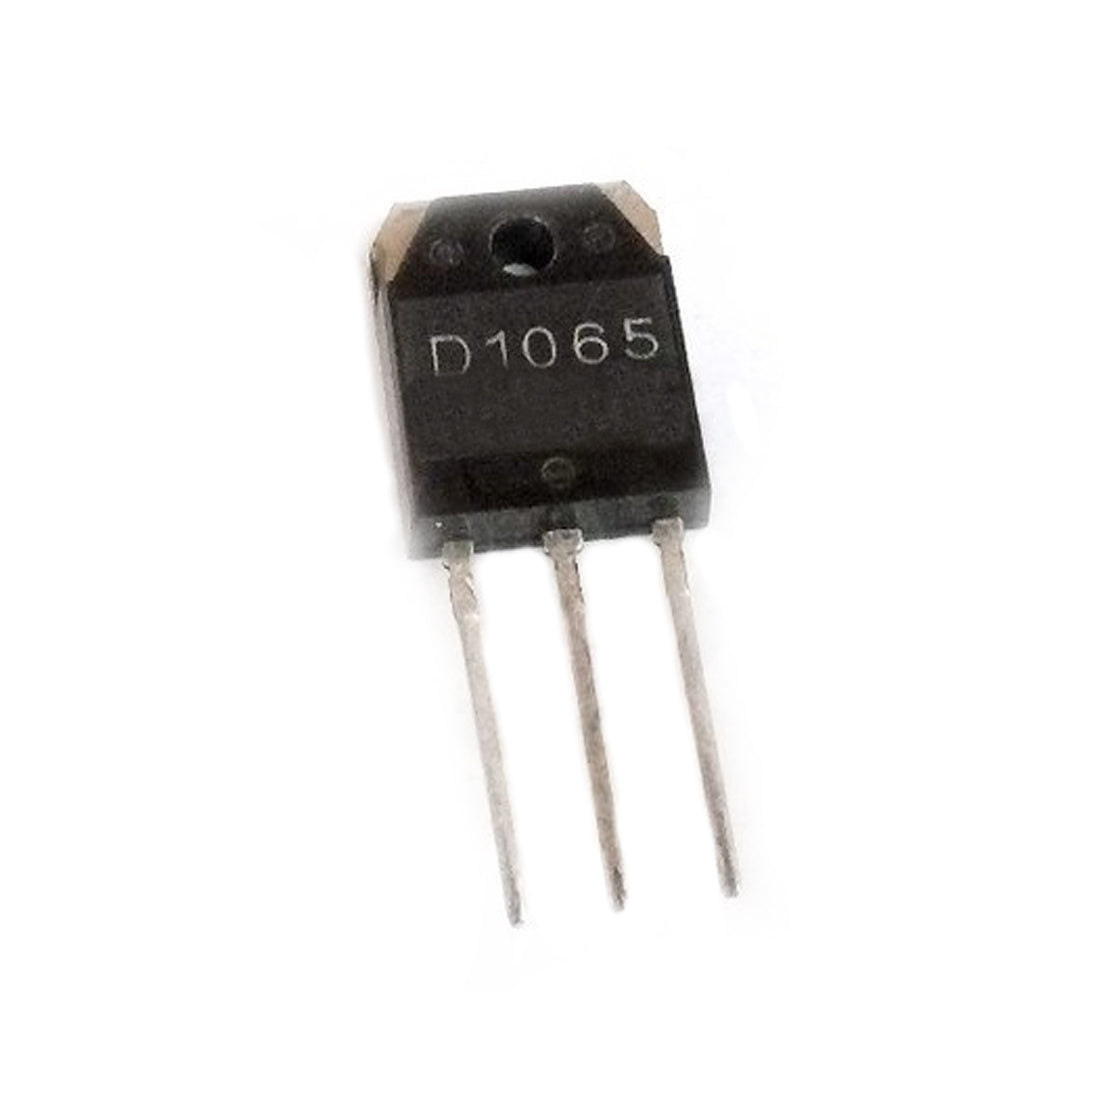 2SD1065 Componente elettronico, circuito integrato, transistor, 3 contatti